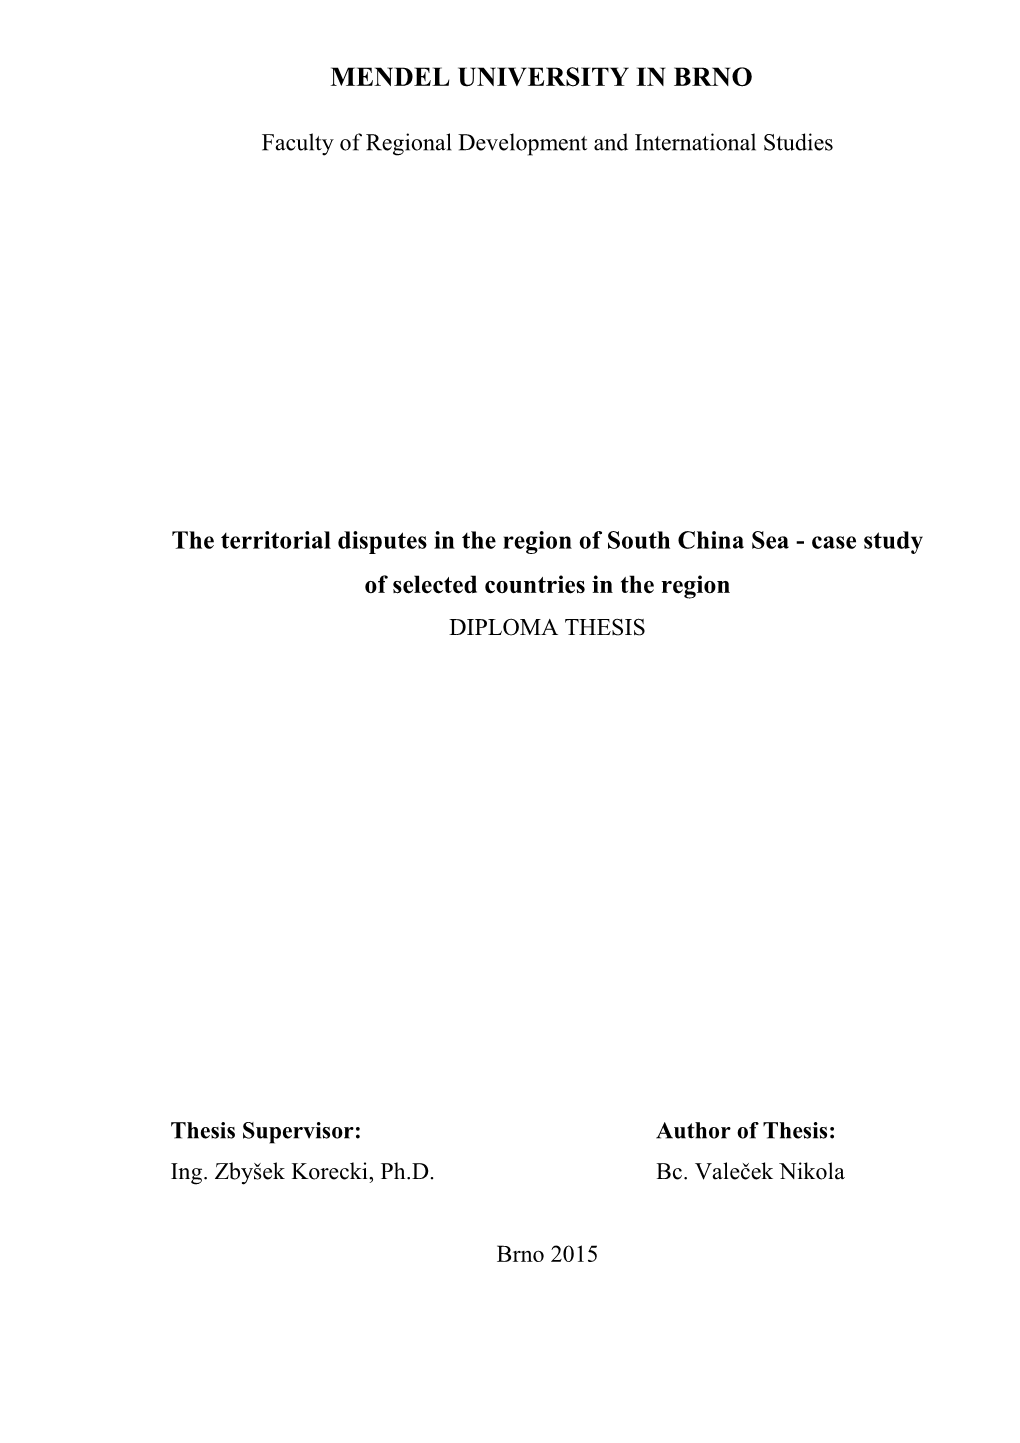 south china sea case study pdf